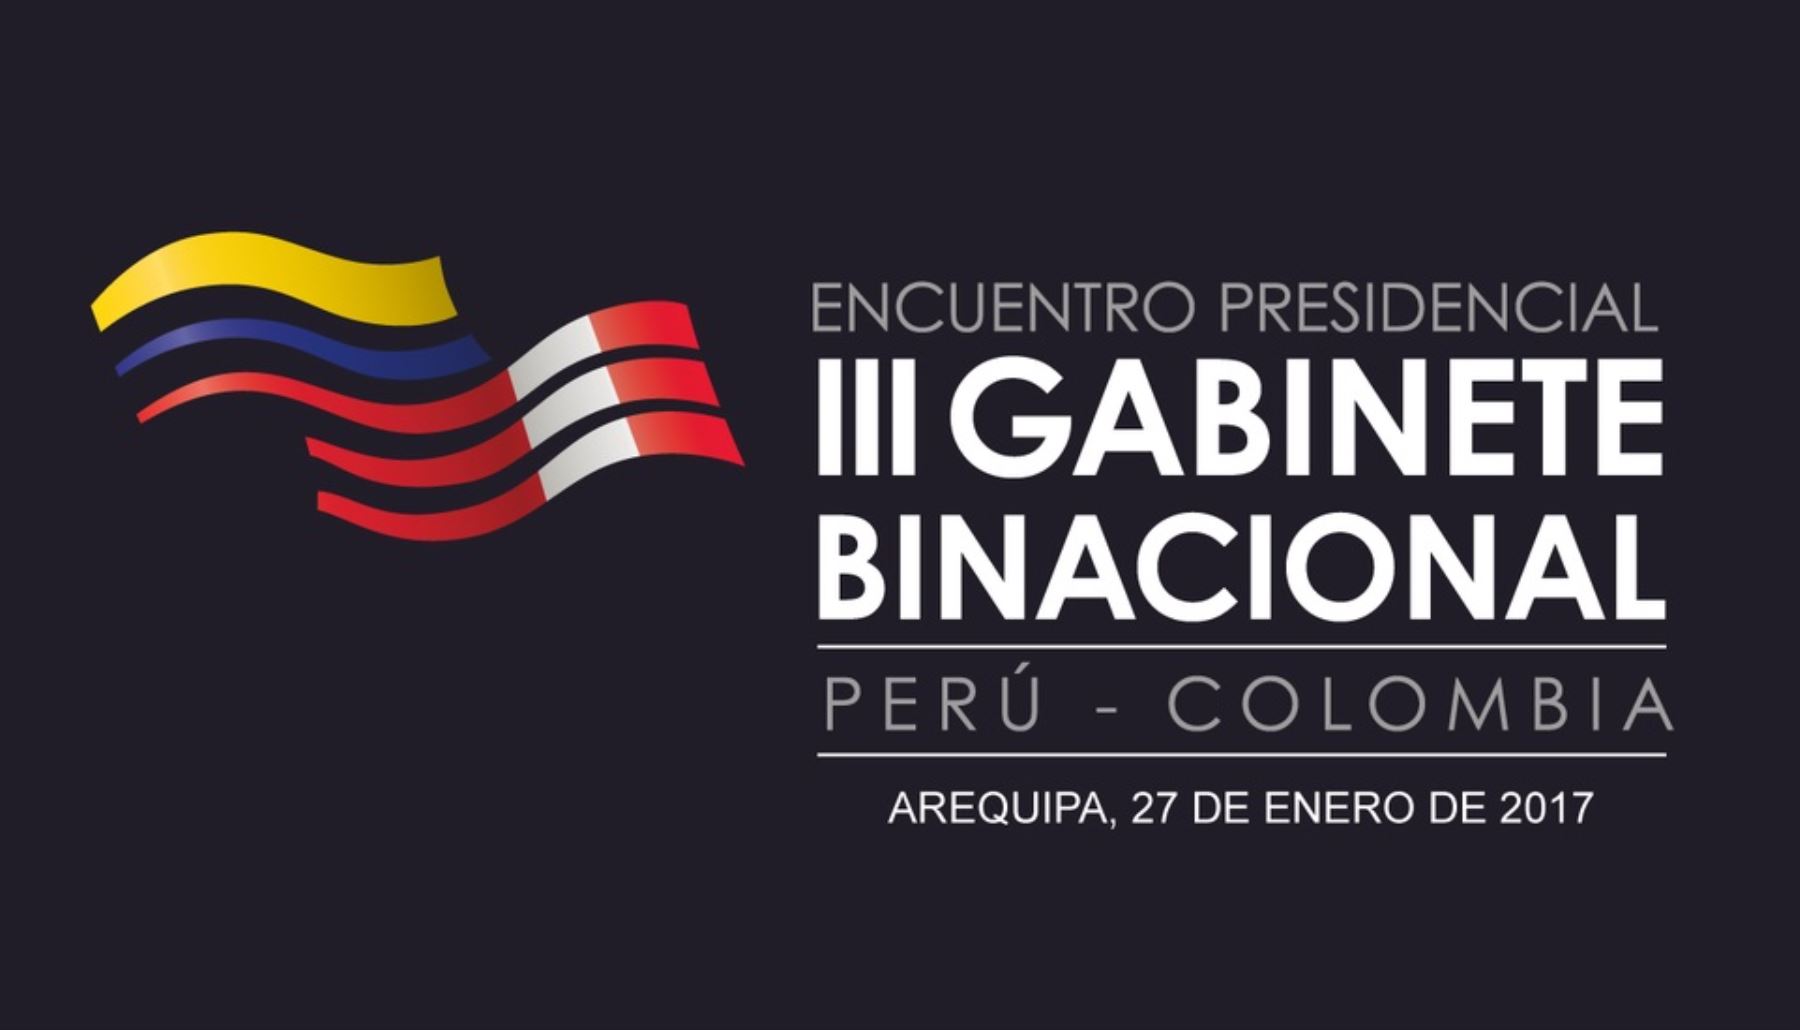 III Gabinete Binacional Perú-Colombia se realizará en la ciudad de Arequipa.